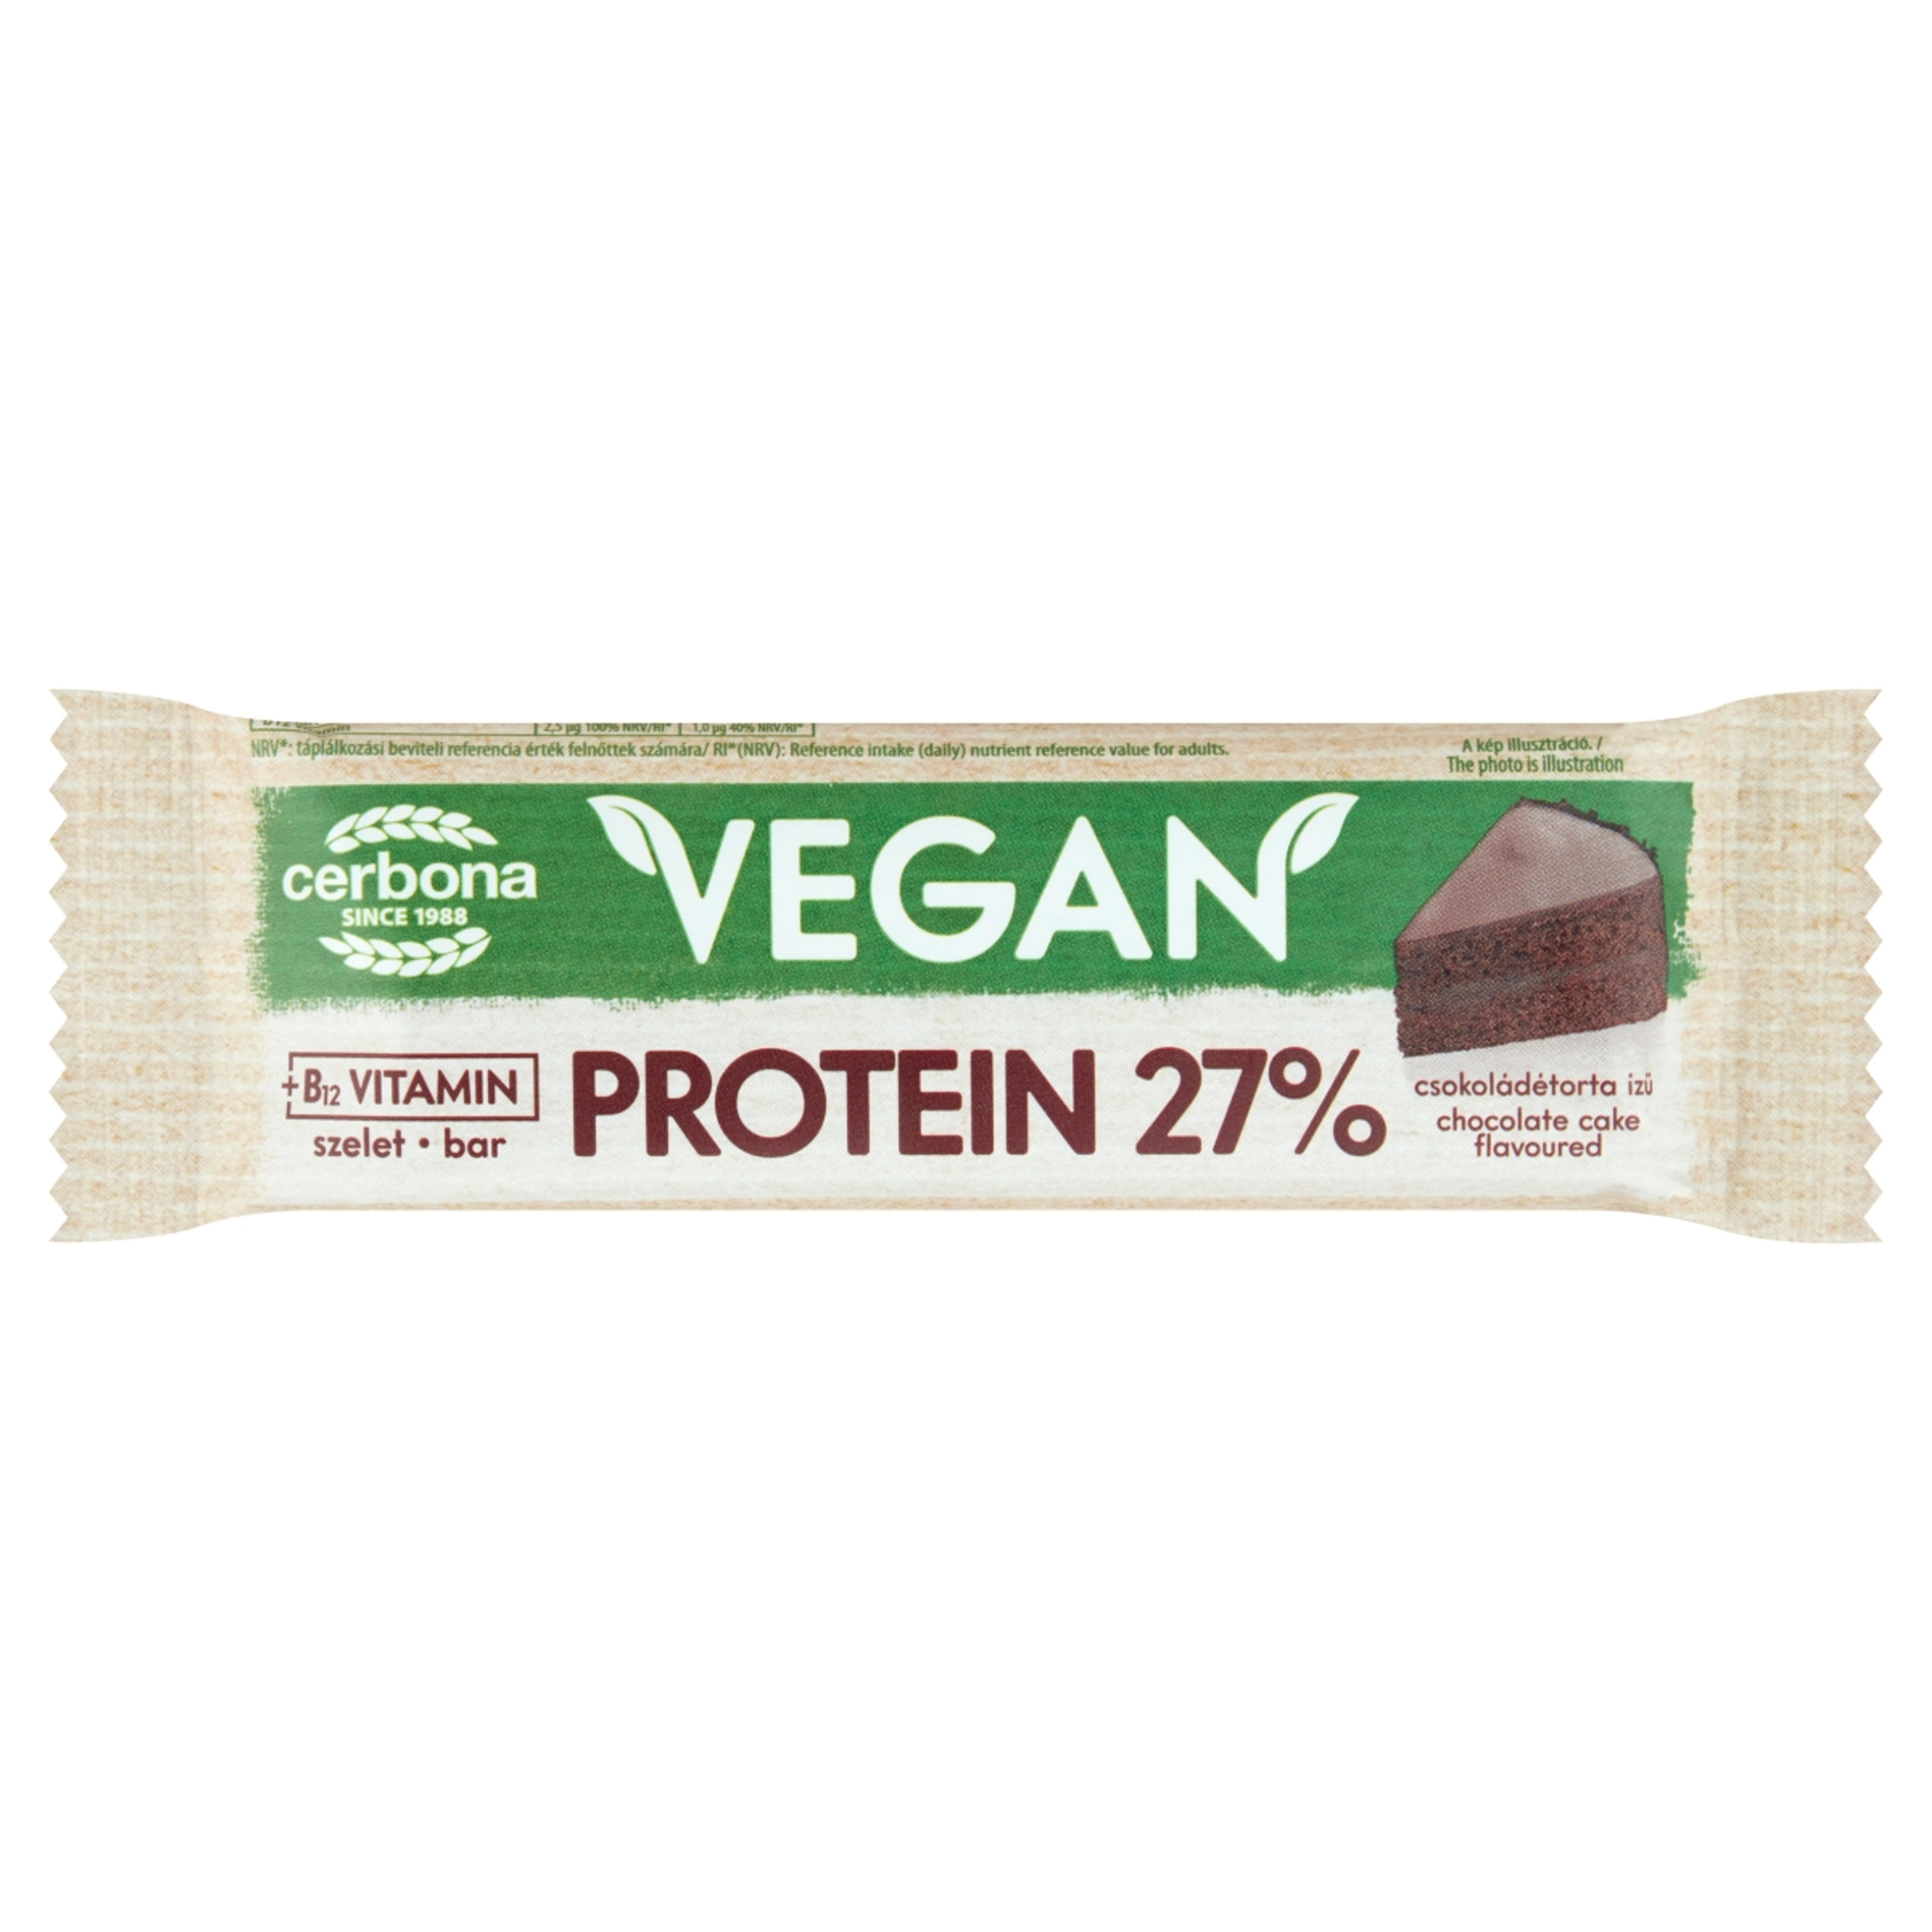 Cerbona Vegan magas fehérjetartalmú csokoládétorta ízű szelet kakaós bevonattal - 40 g-1